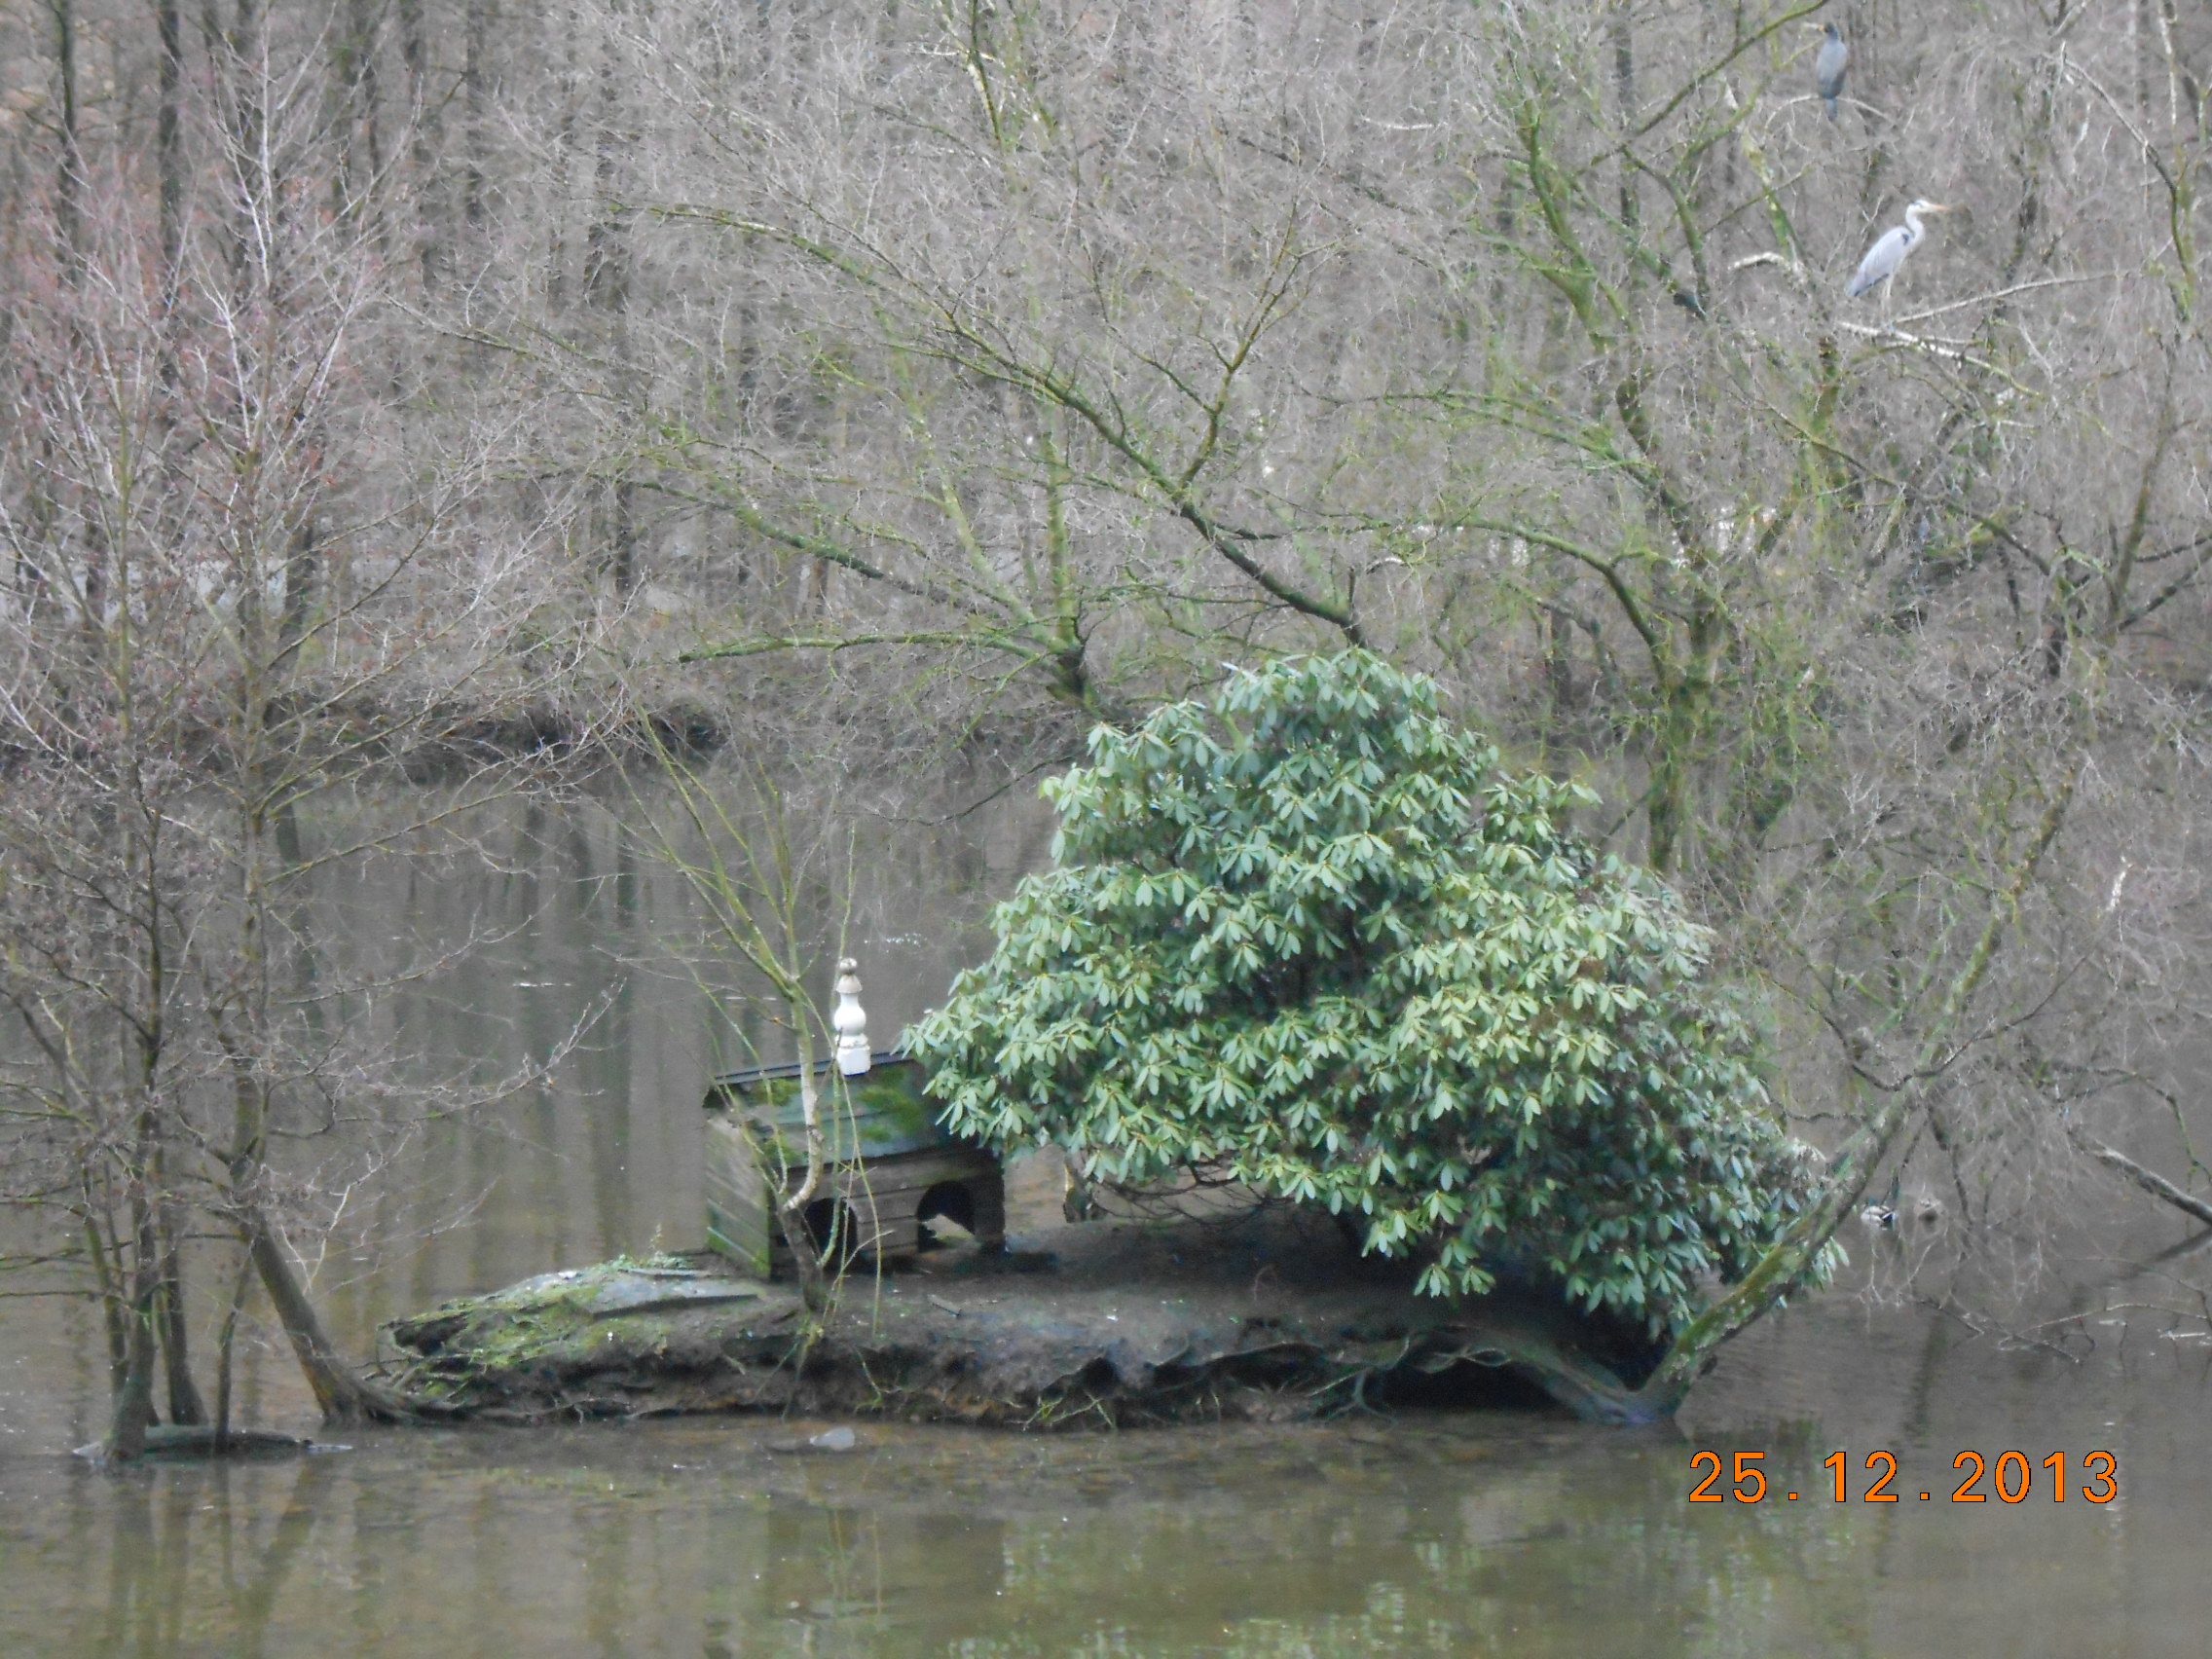 Teich mit Schwanenhaus im Ortsteil Laaken - 15 min. von der City entfernt.